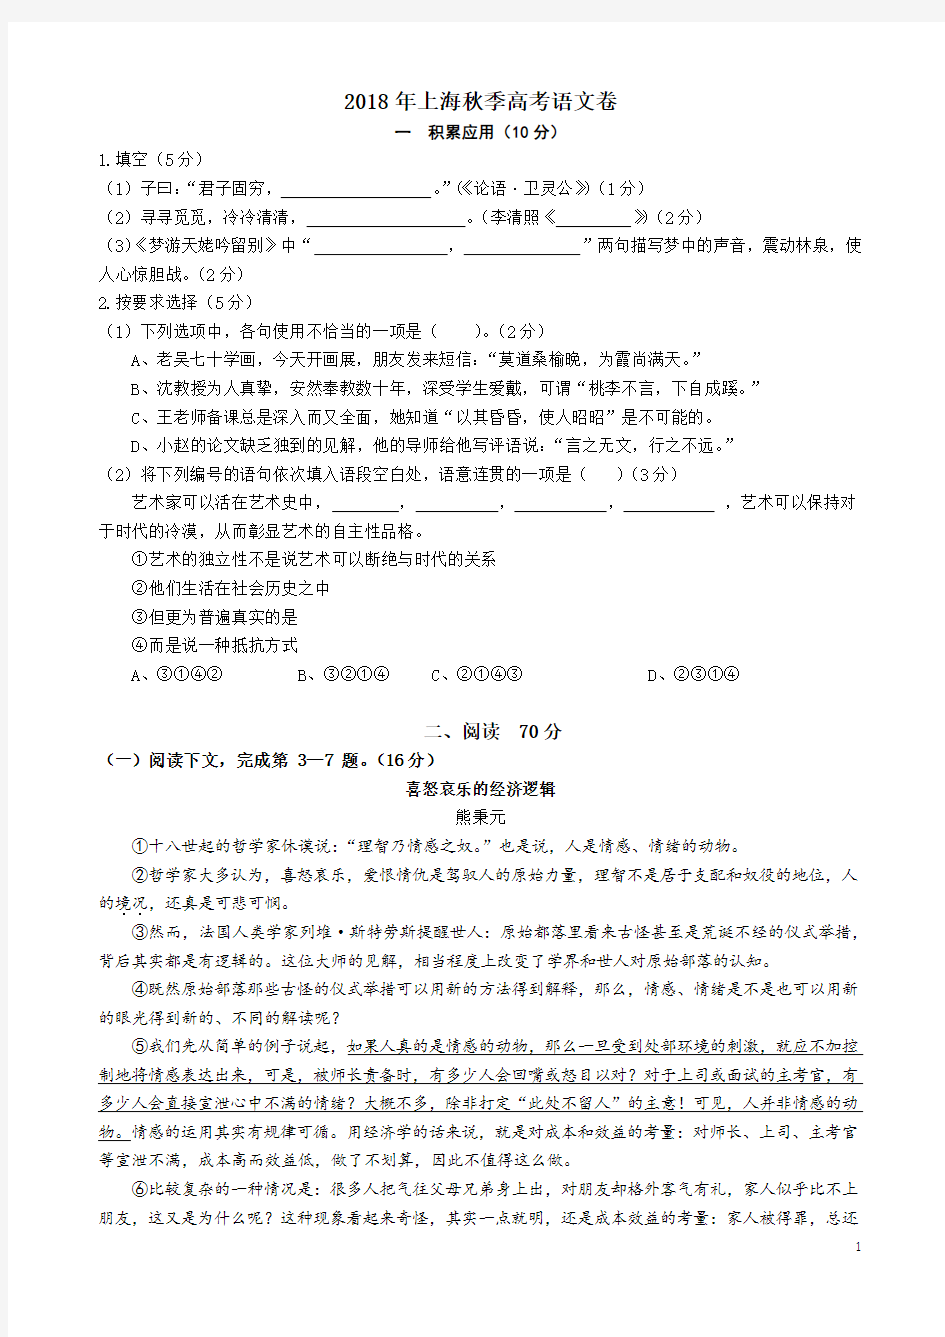 (完整版)2018年上海高考语文试卷及答案,推荐文档